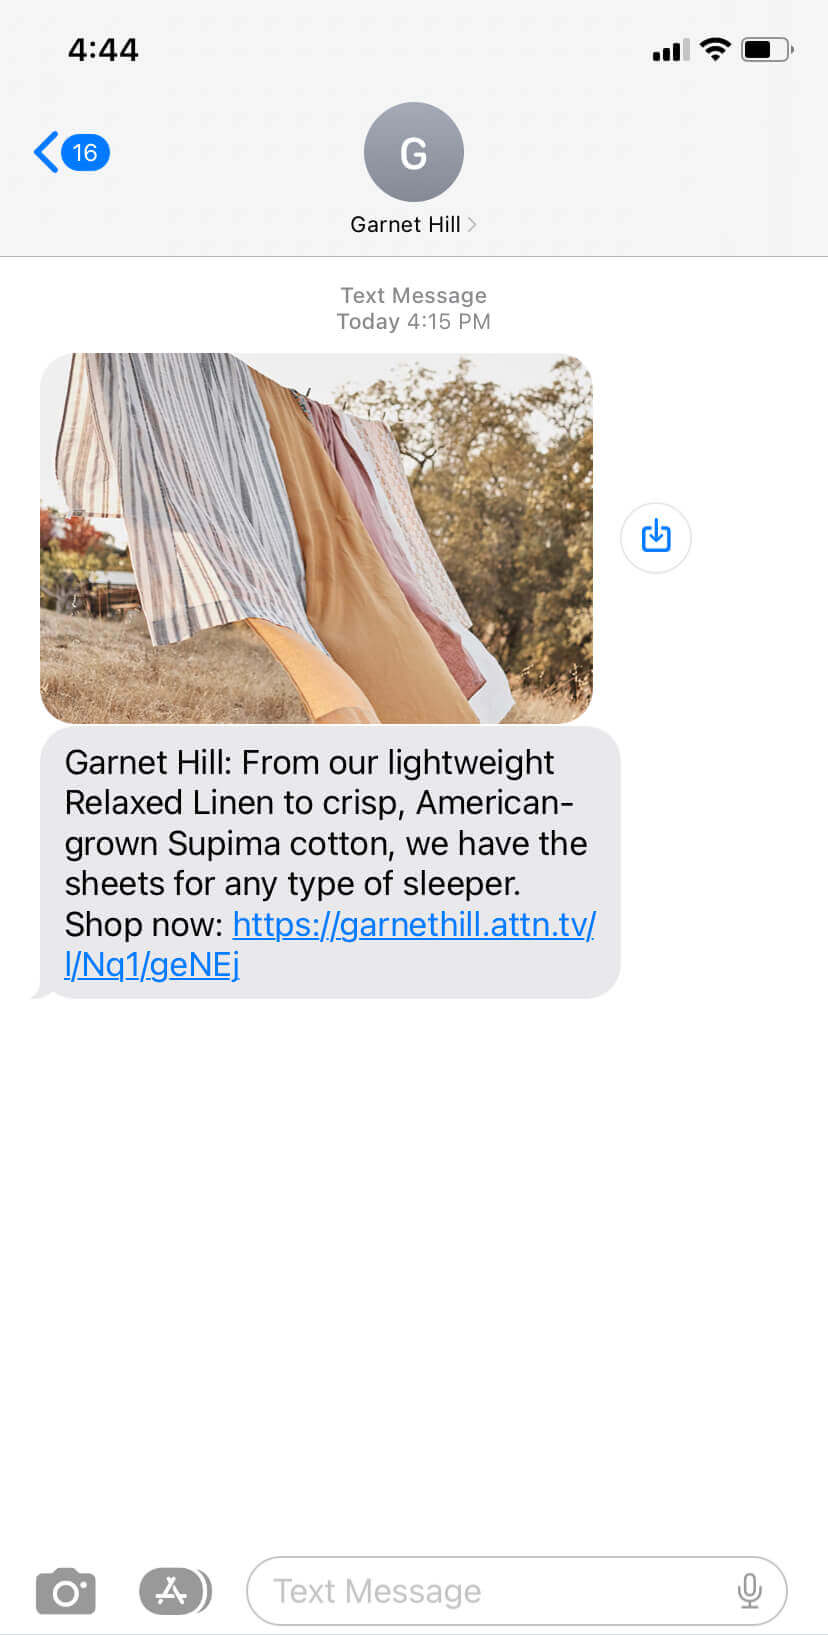 Text message from Garnet Hill